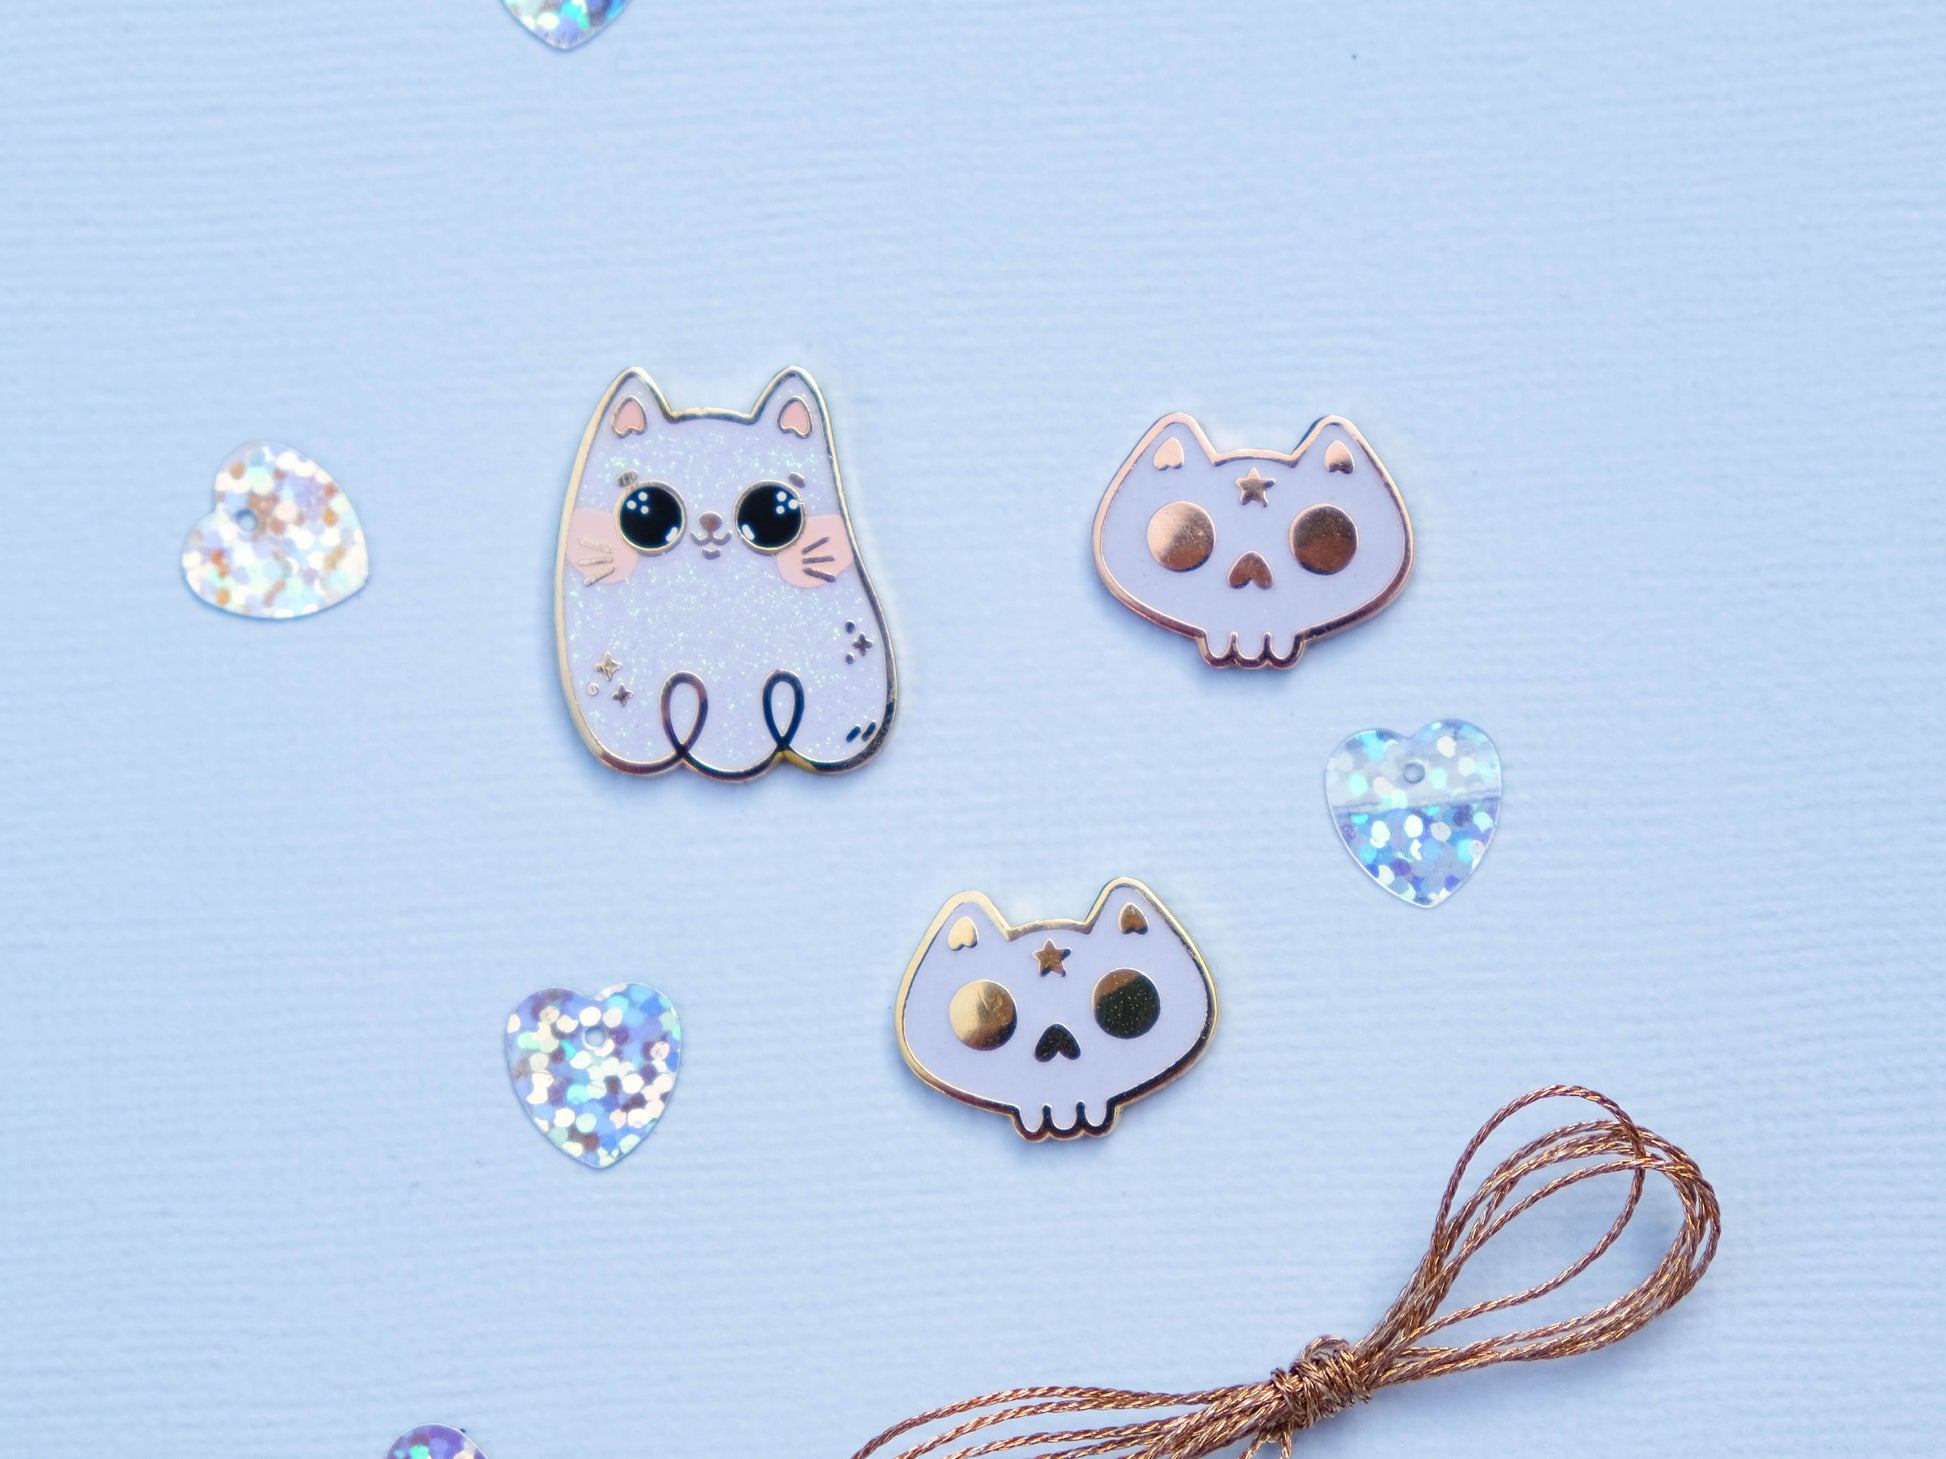 Cute Little Cat Ghost Hard Enamel Pin // White Cat with Glitters - Hard enamel pin for Halloween